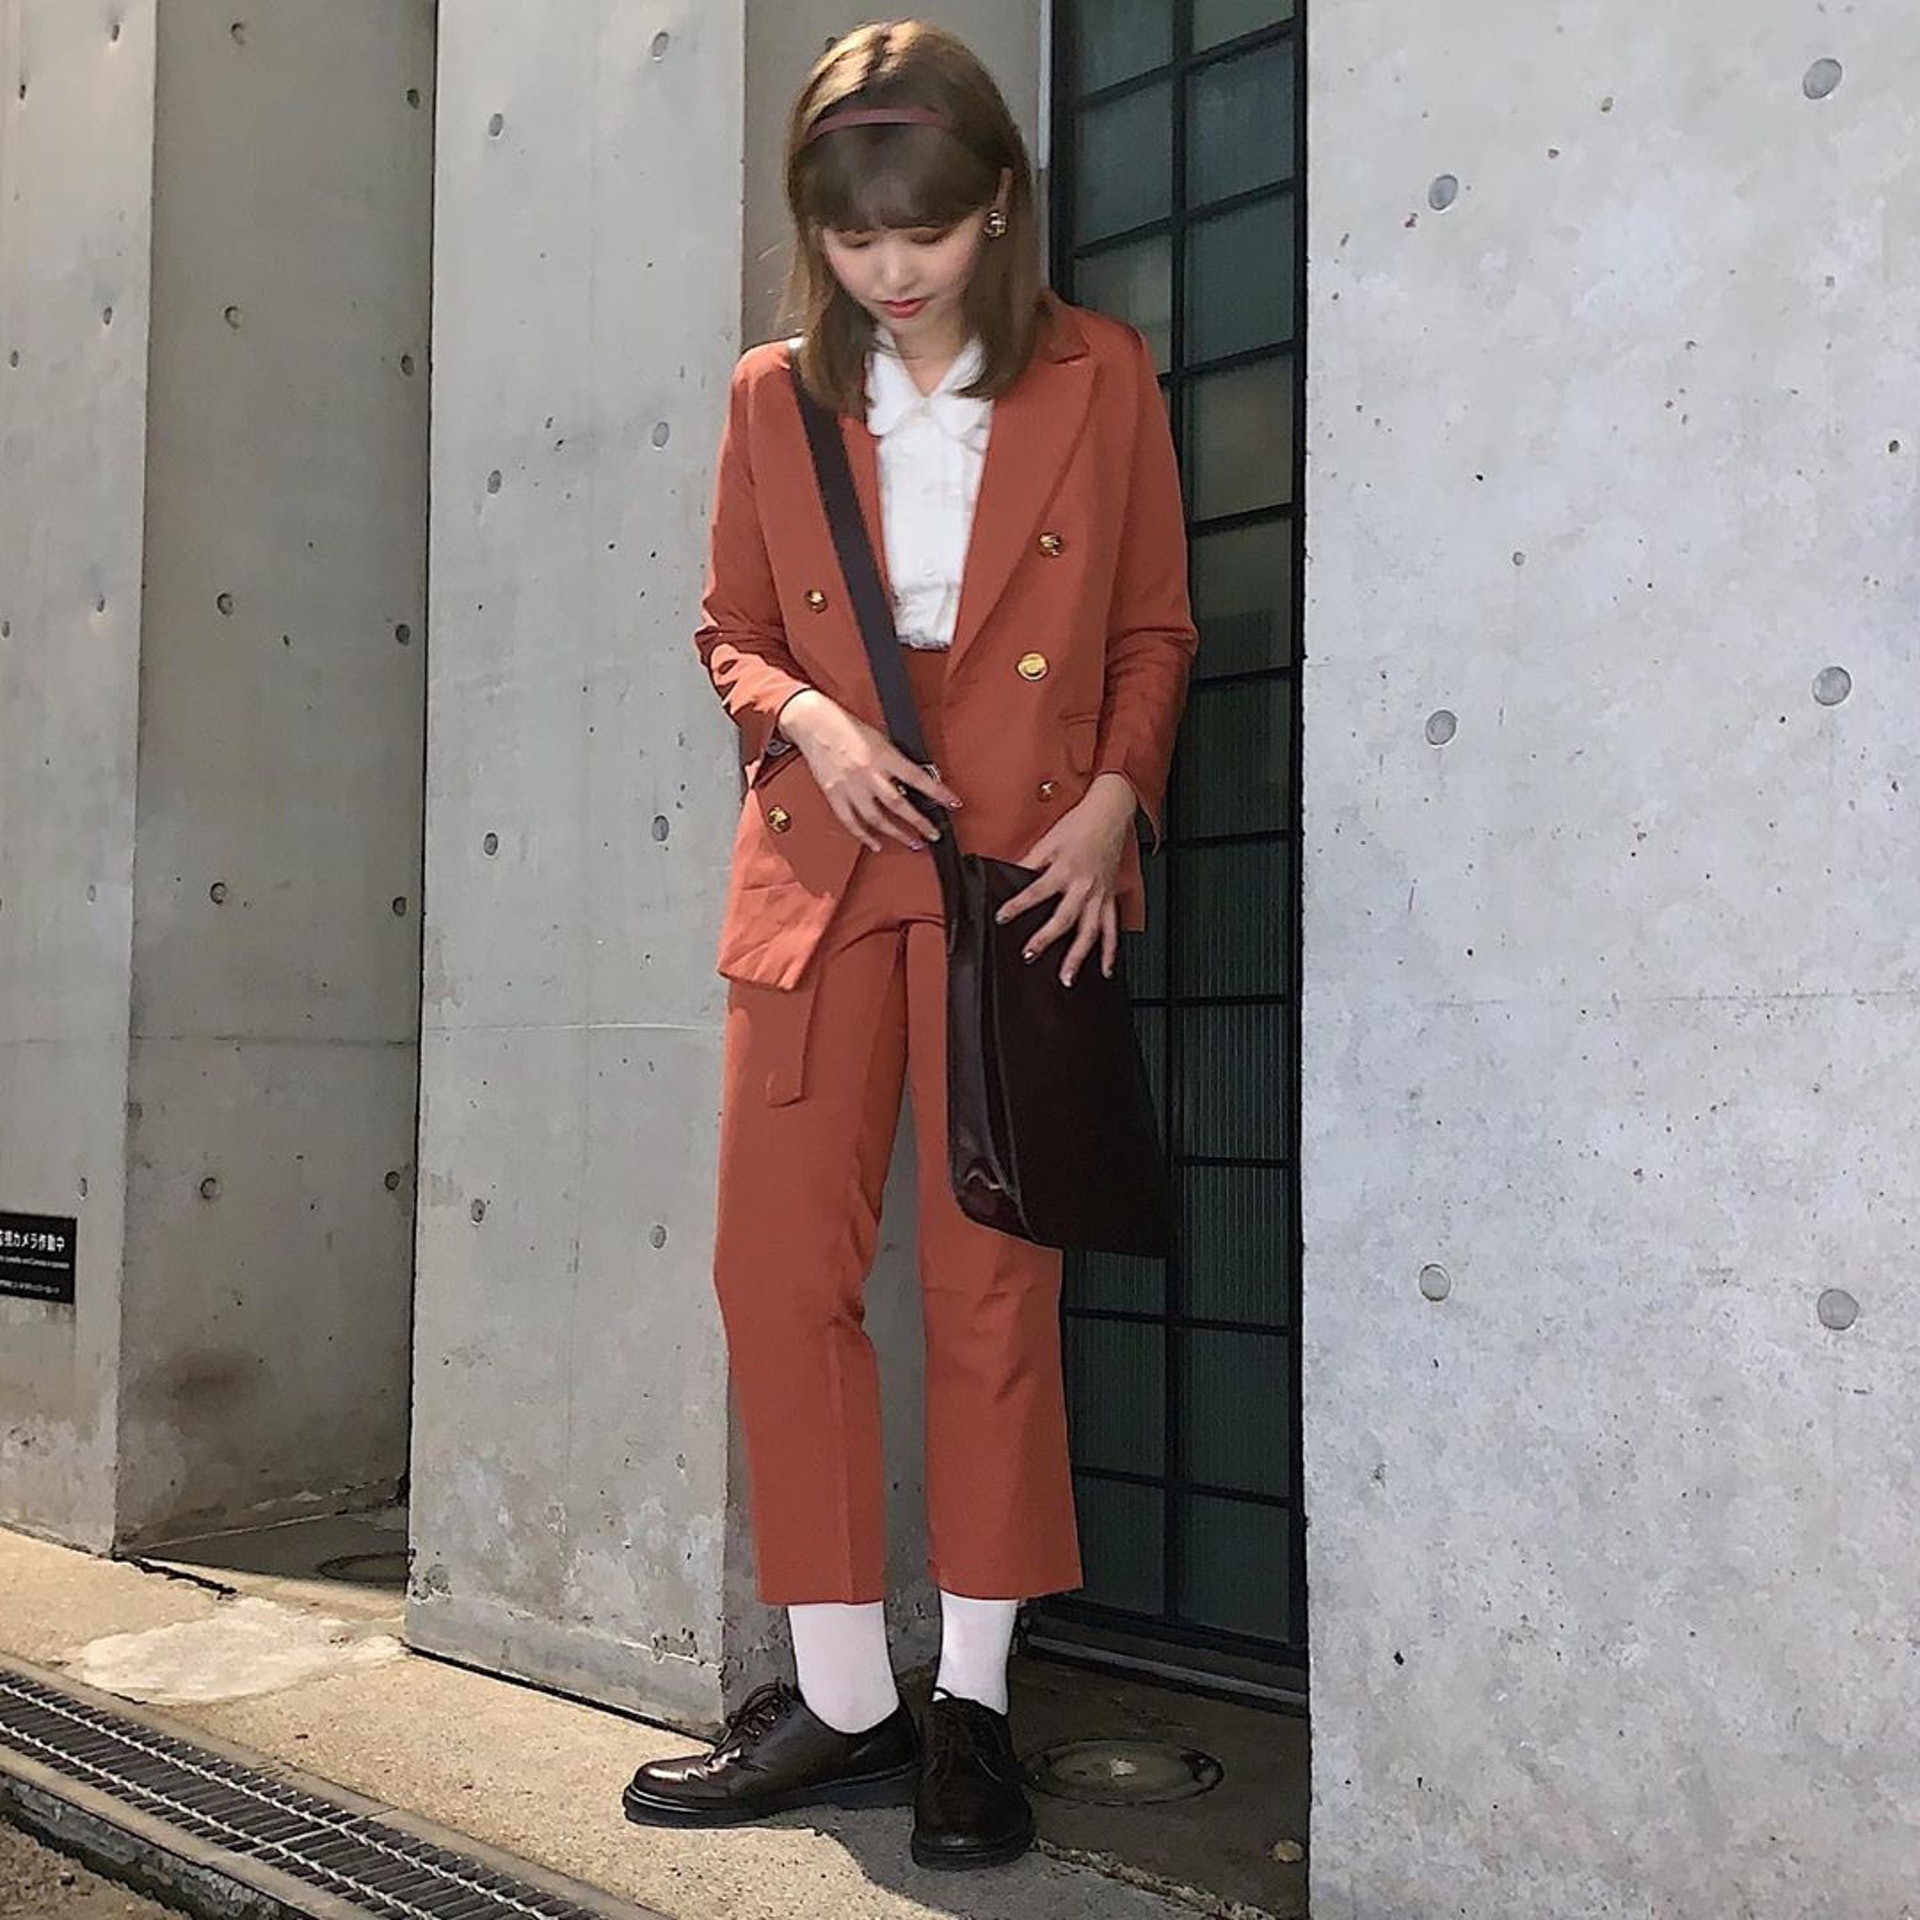 日本女生Chaki亦會購買Uniqlo、GU、Zara服裝作配襯。(__nmsk13@Instagram)